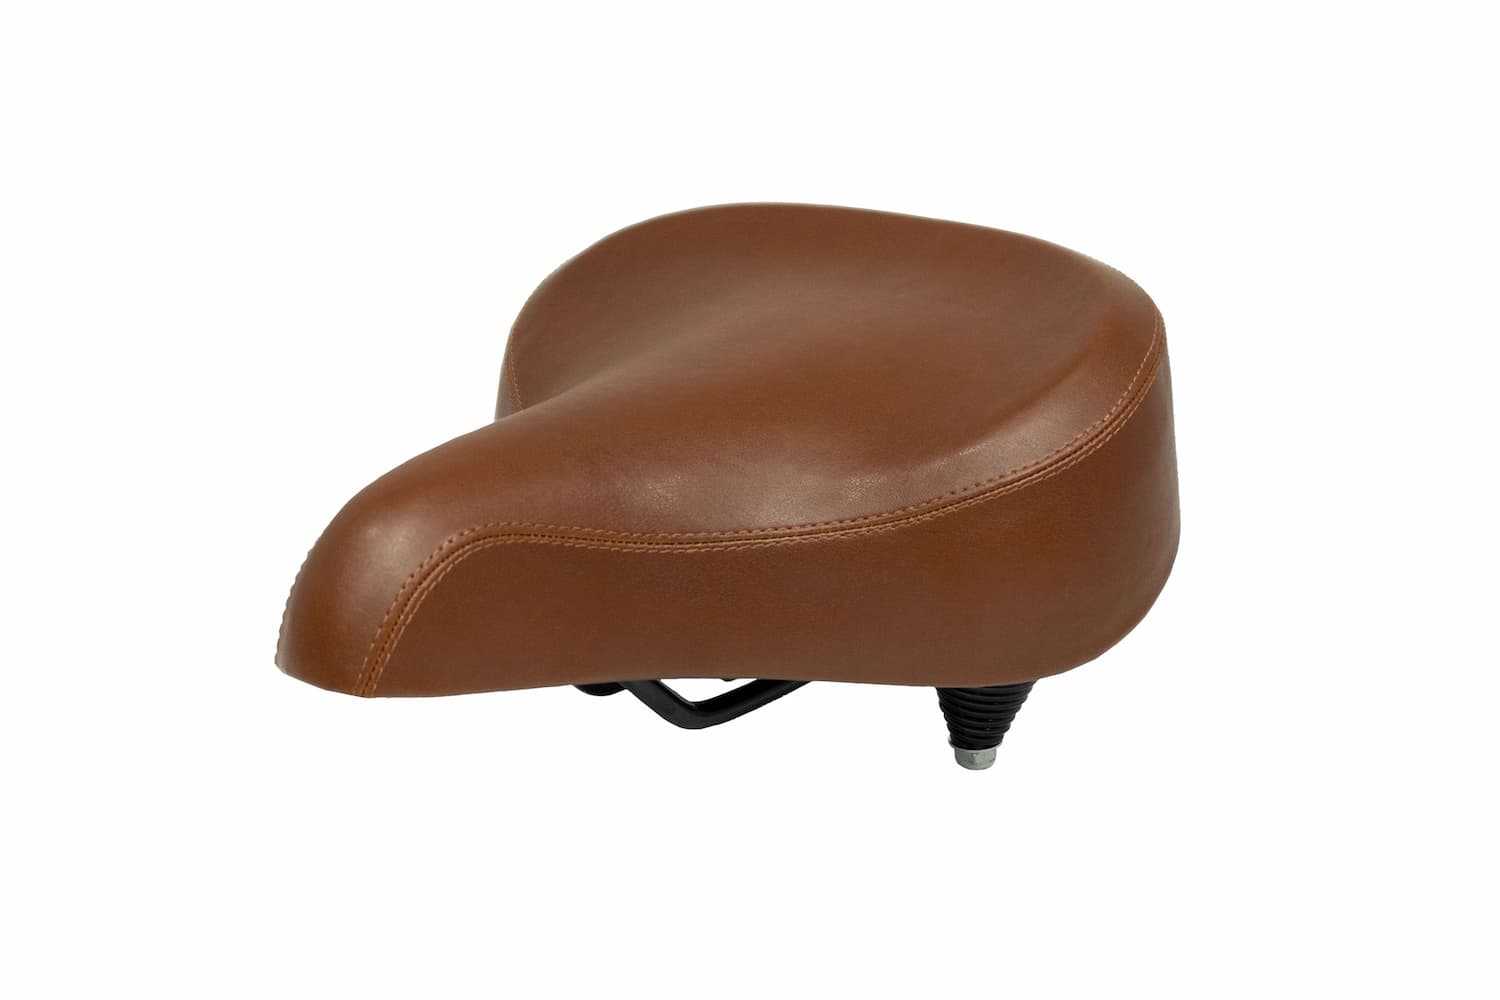 Cafe Racer Mach Abel leather saddle